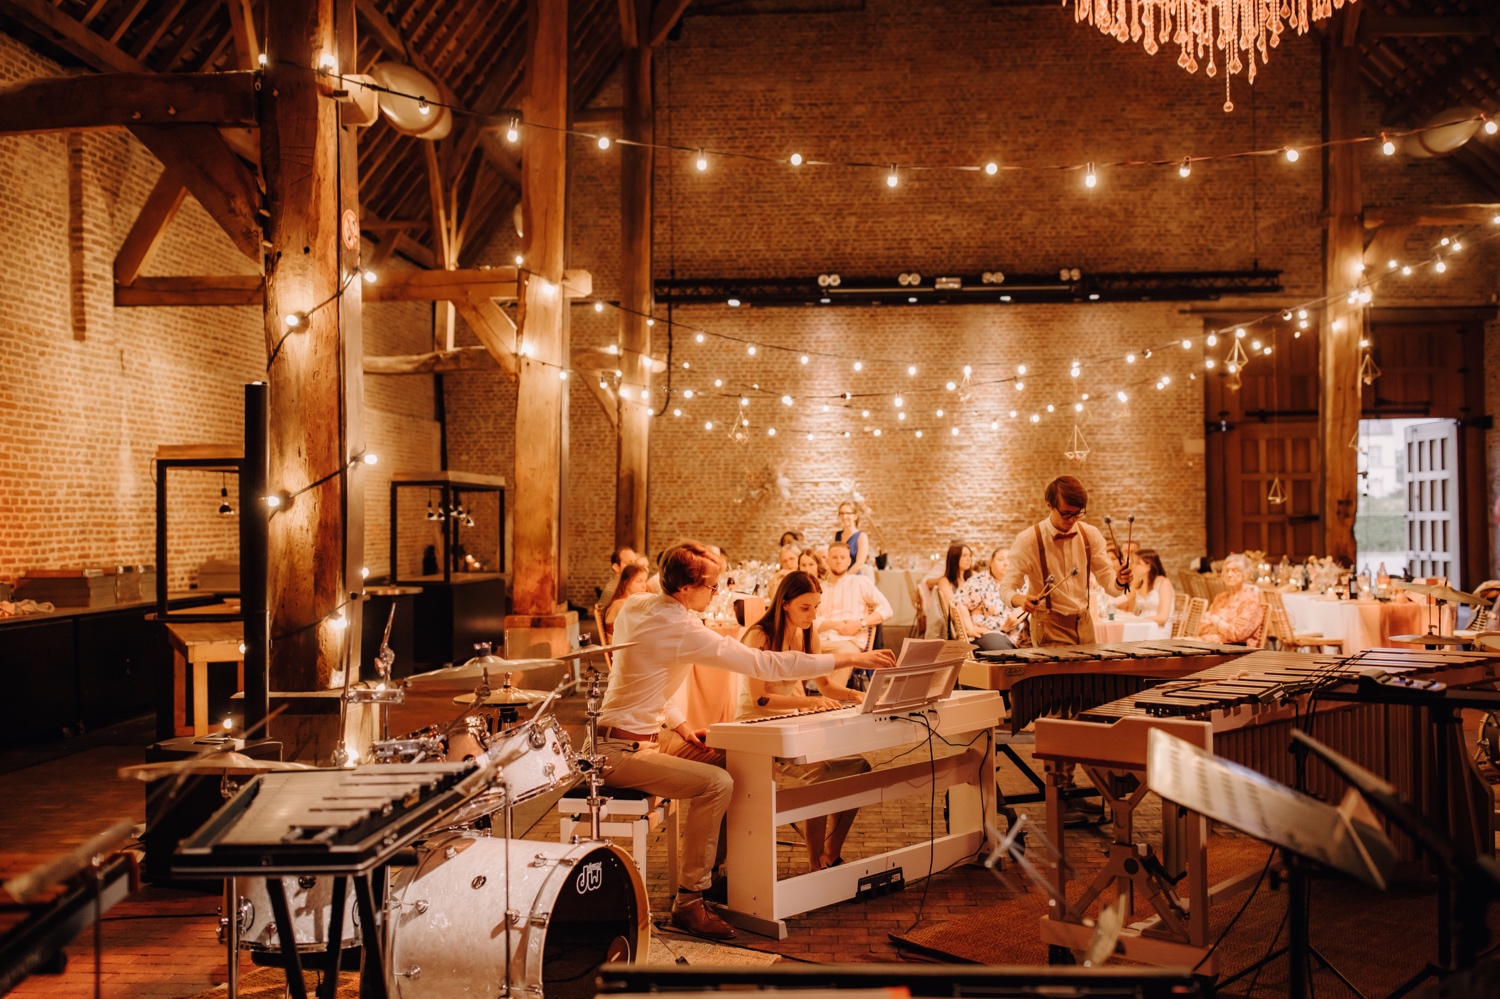 Huwelijksfotograaf Limburg - symfonisch orkest treedt op tijdens huwelijksfeest